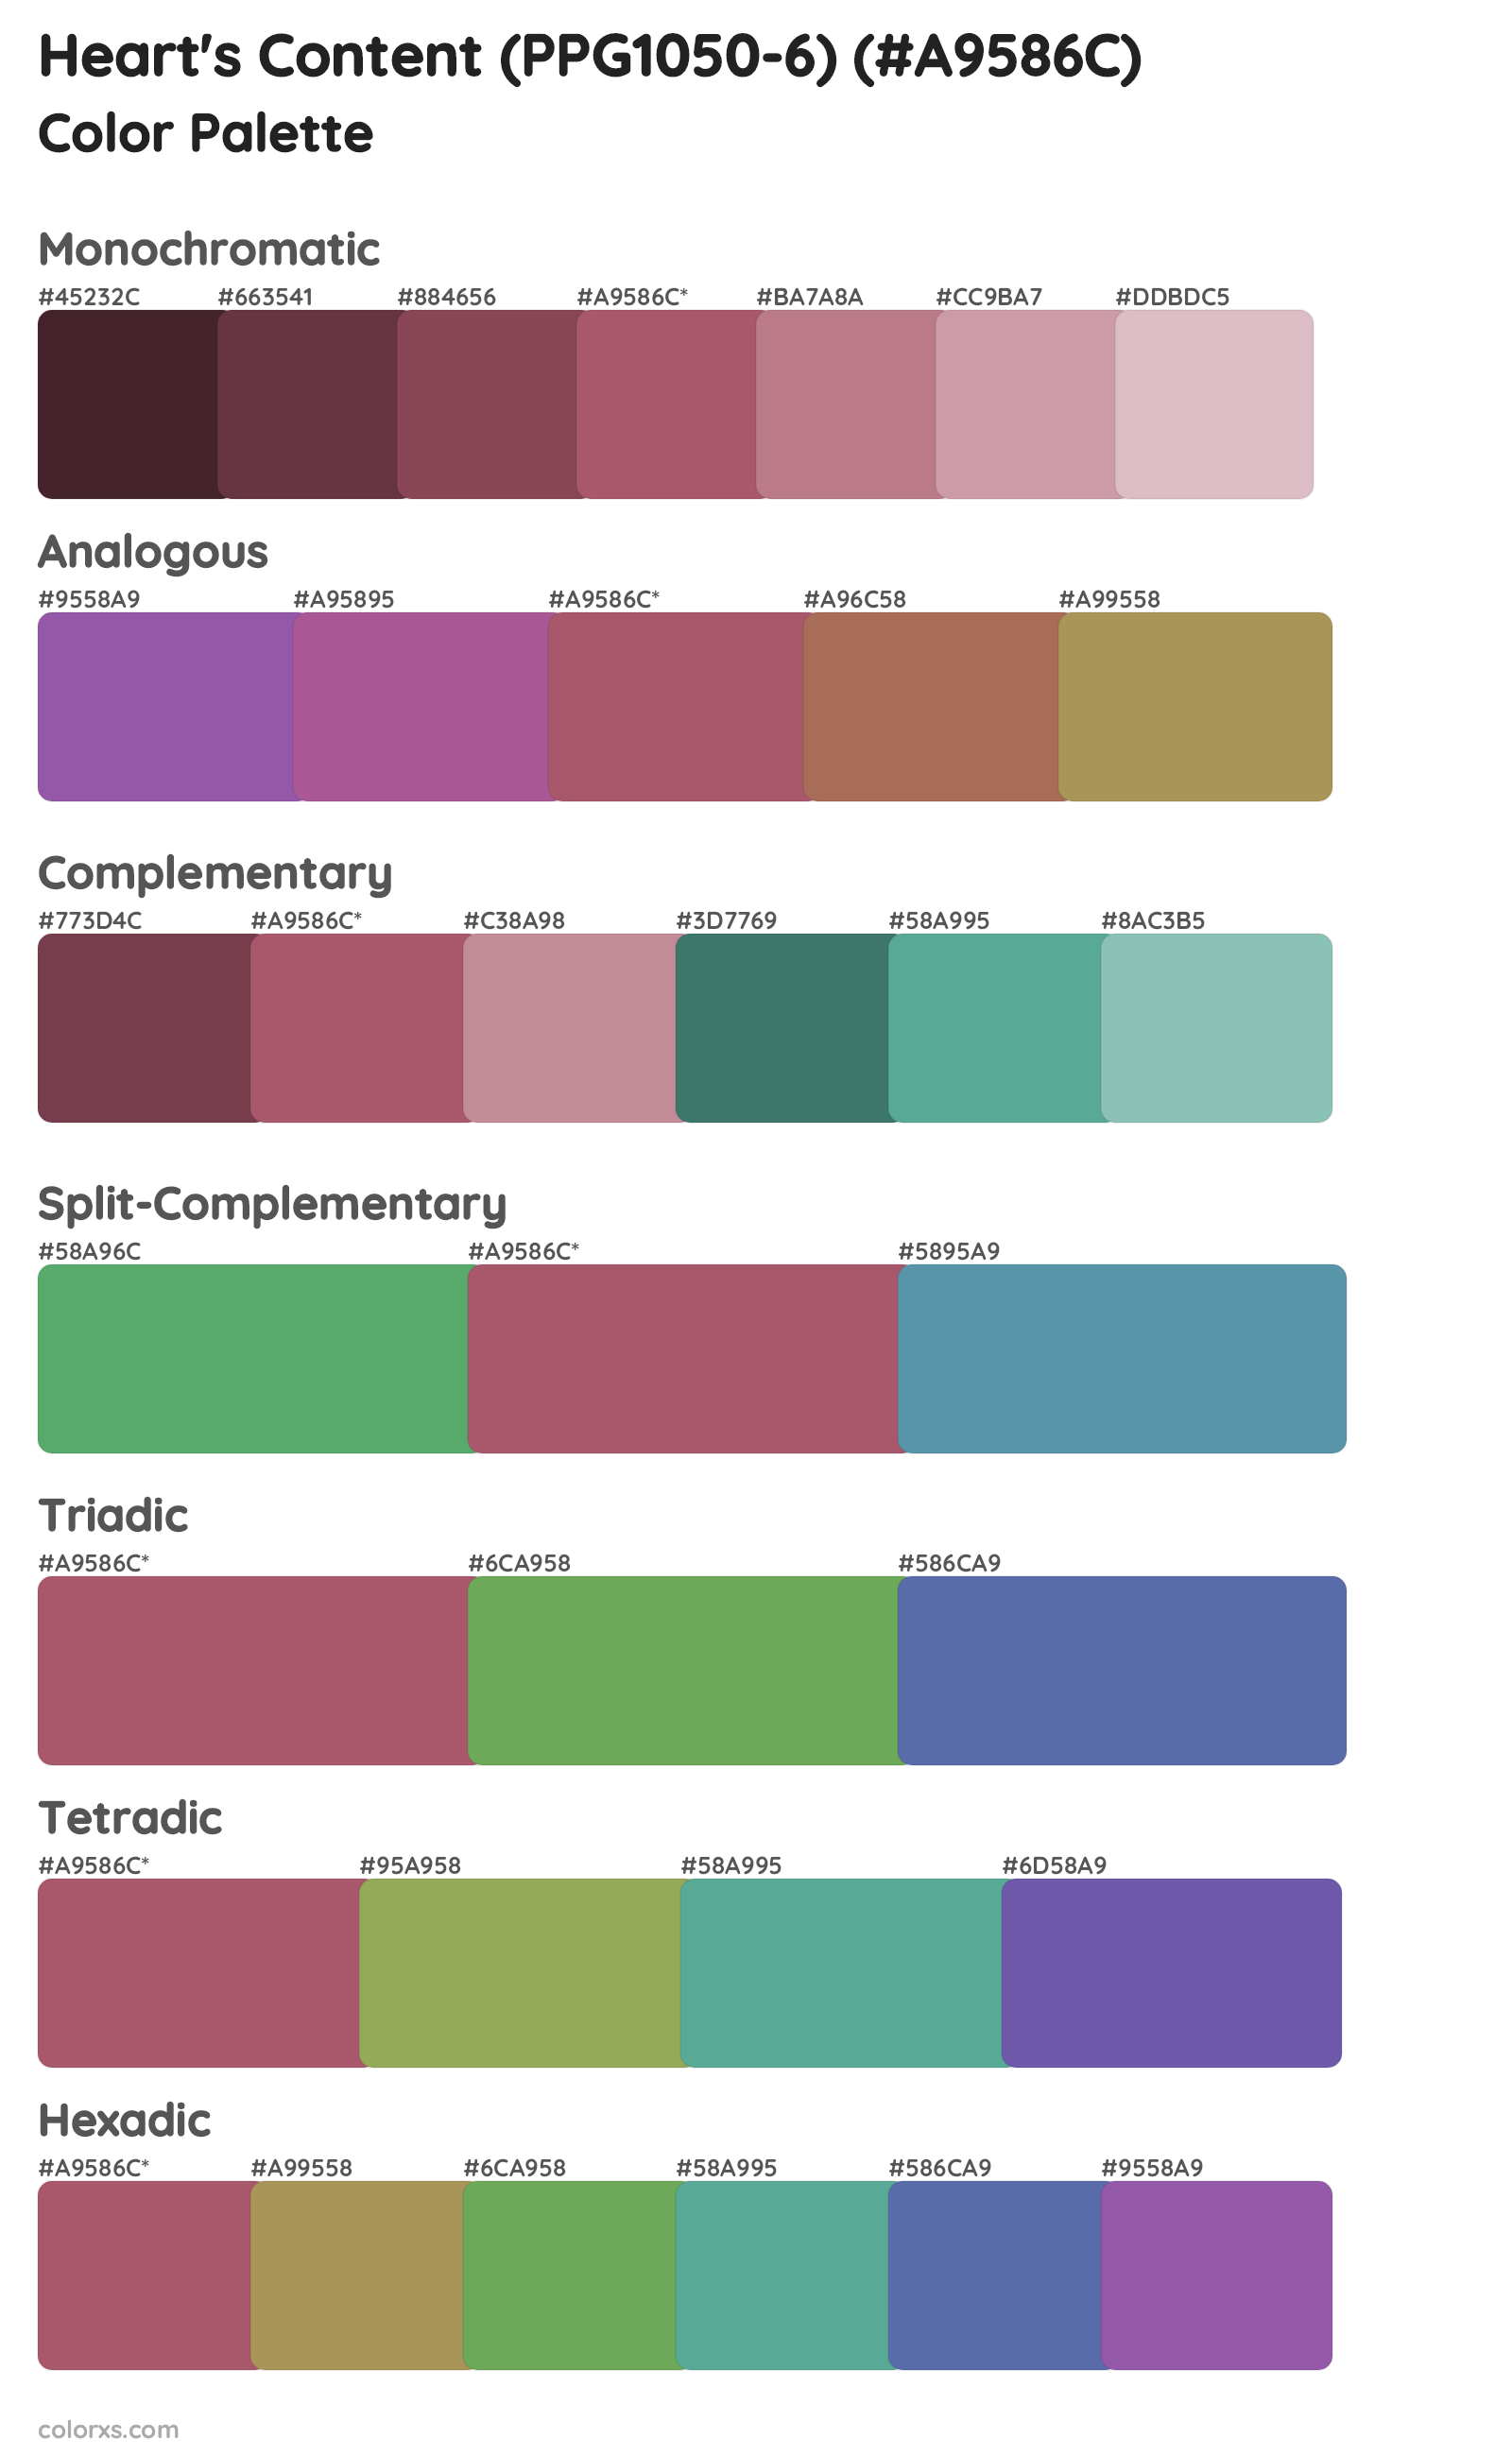 Heart's Content (PPG1050-6) Color Scheme Palettes